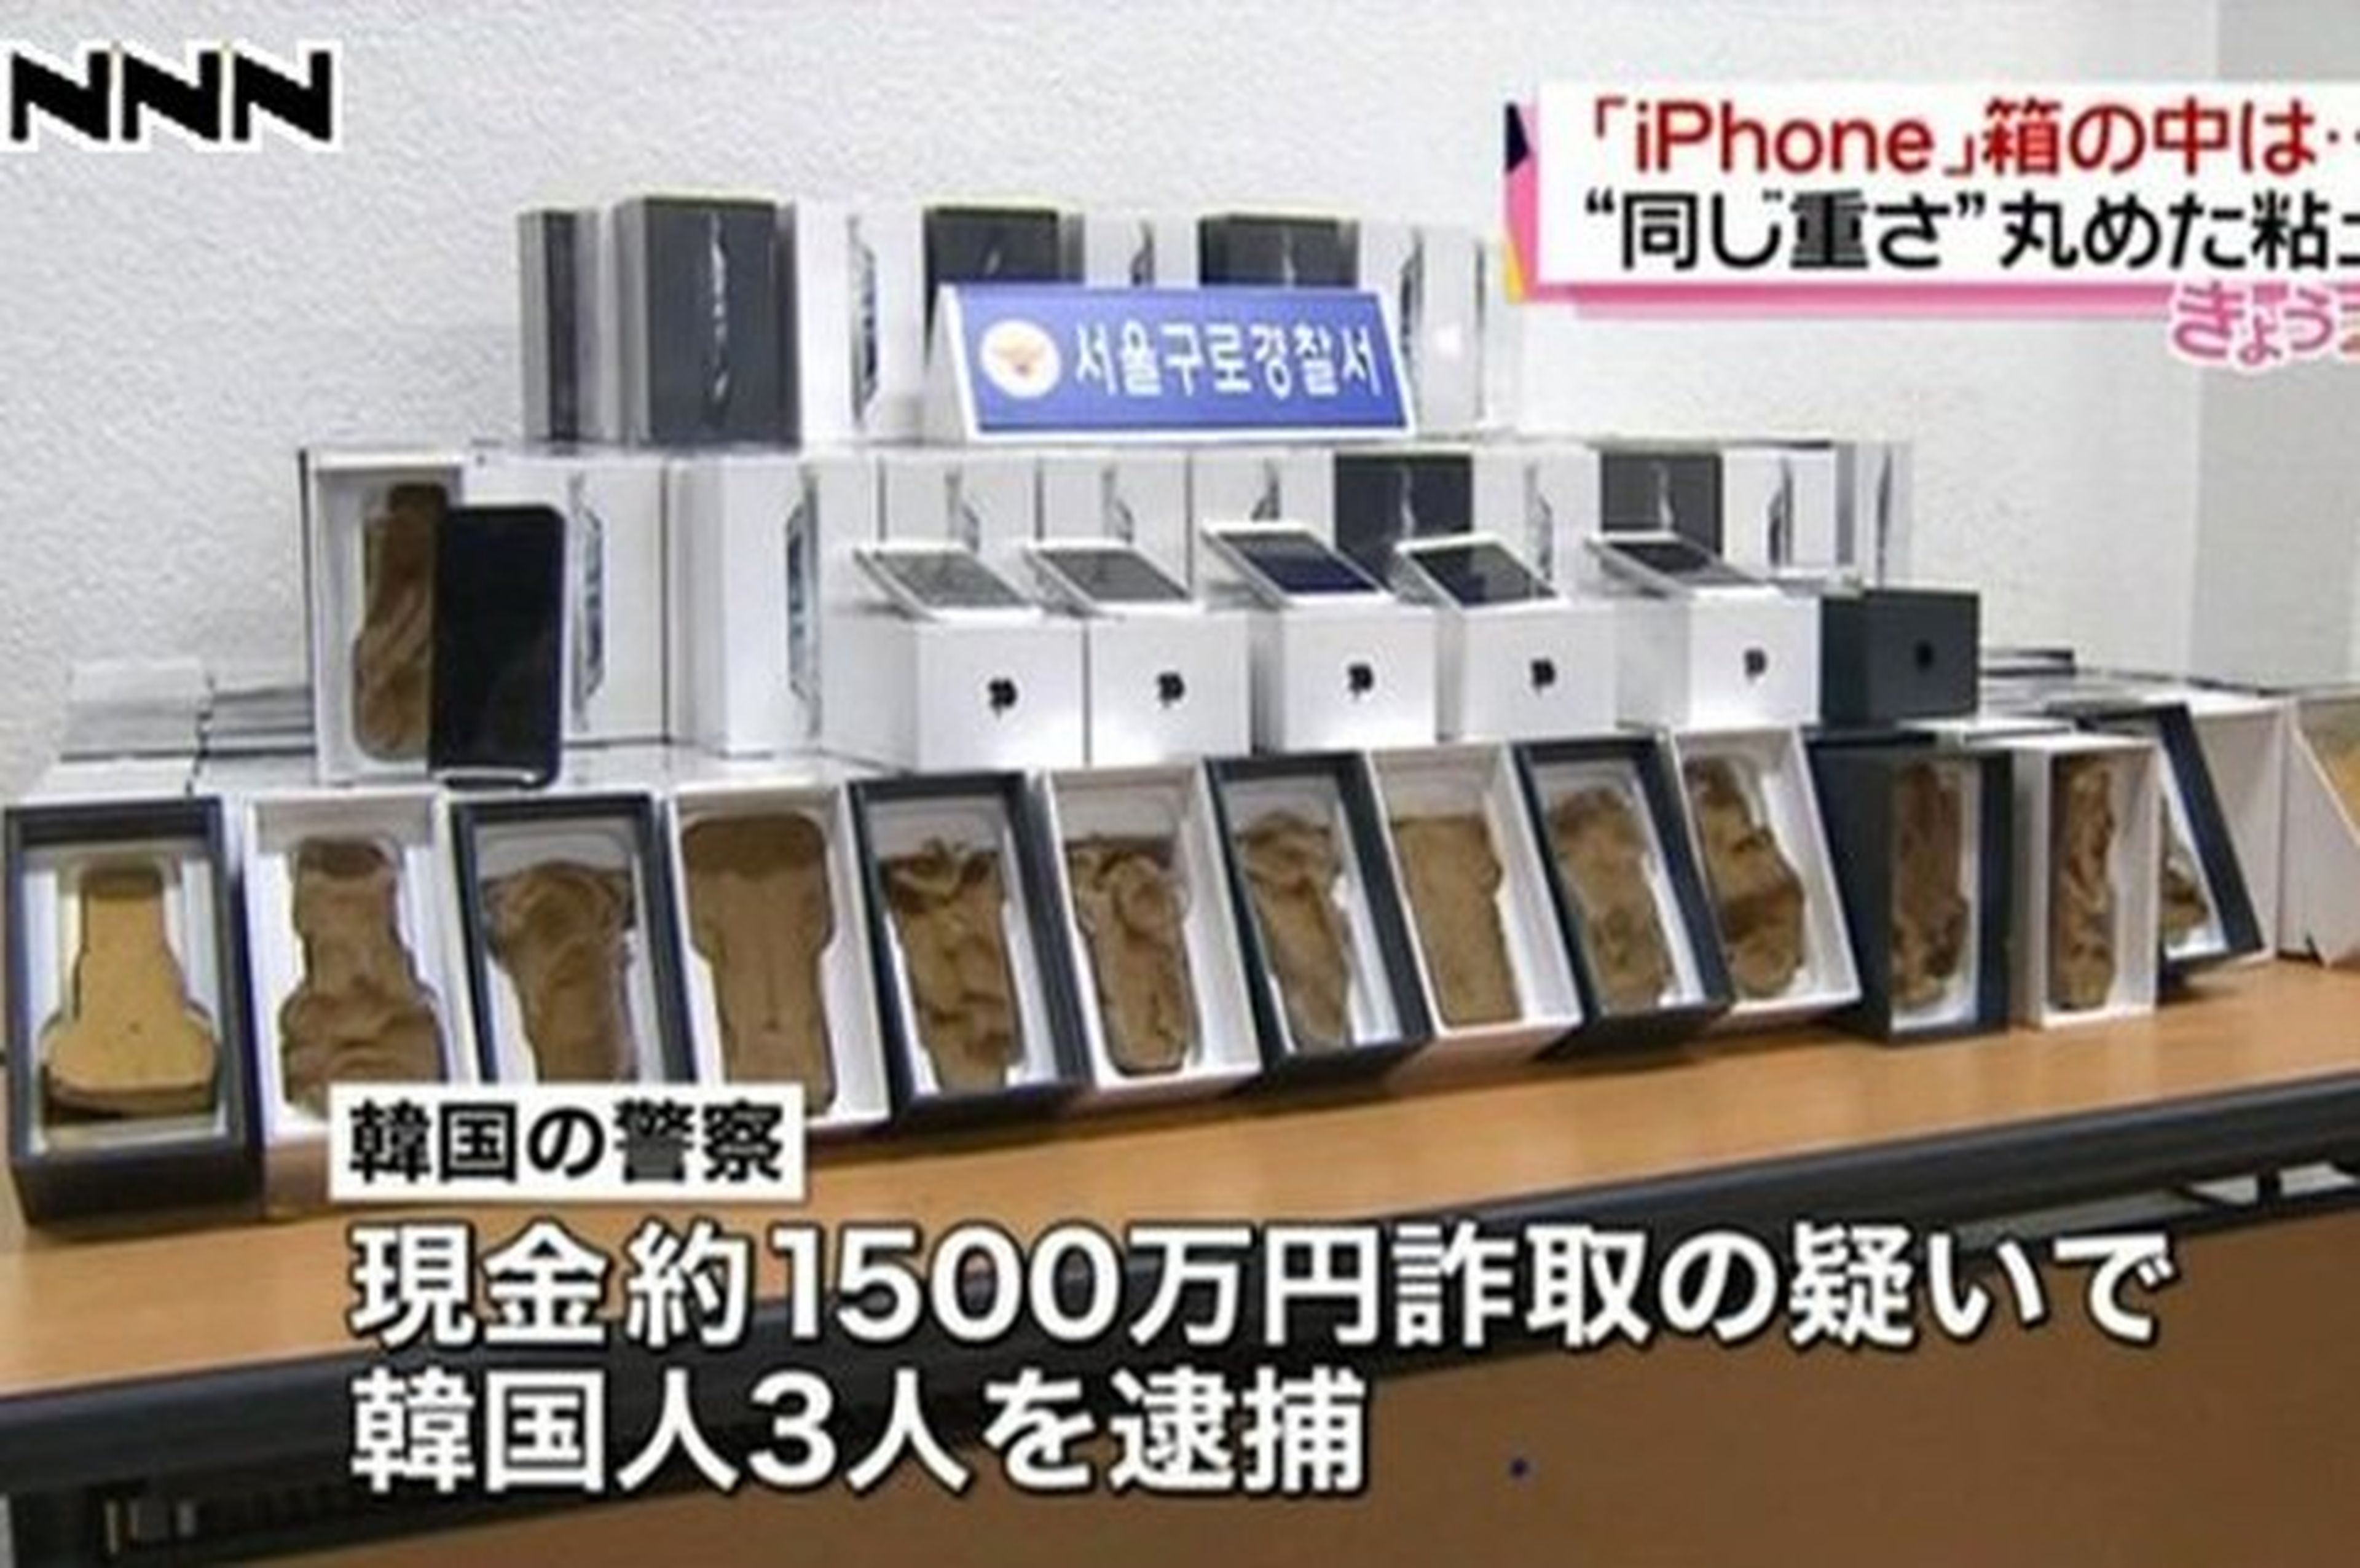 Cajas de iPhone falsos hechos con arcilla